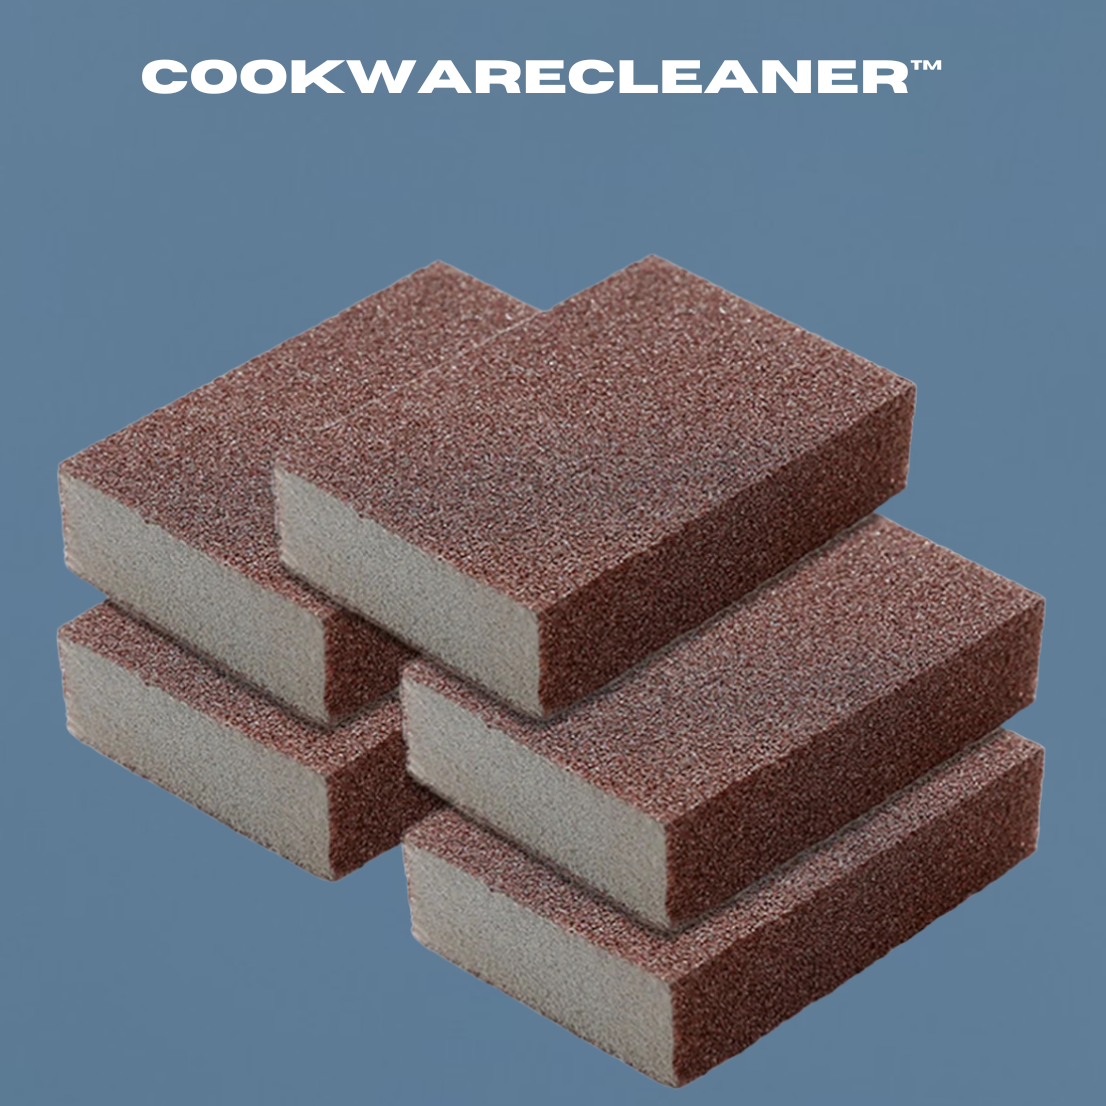 CookwareCleaner™